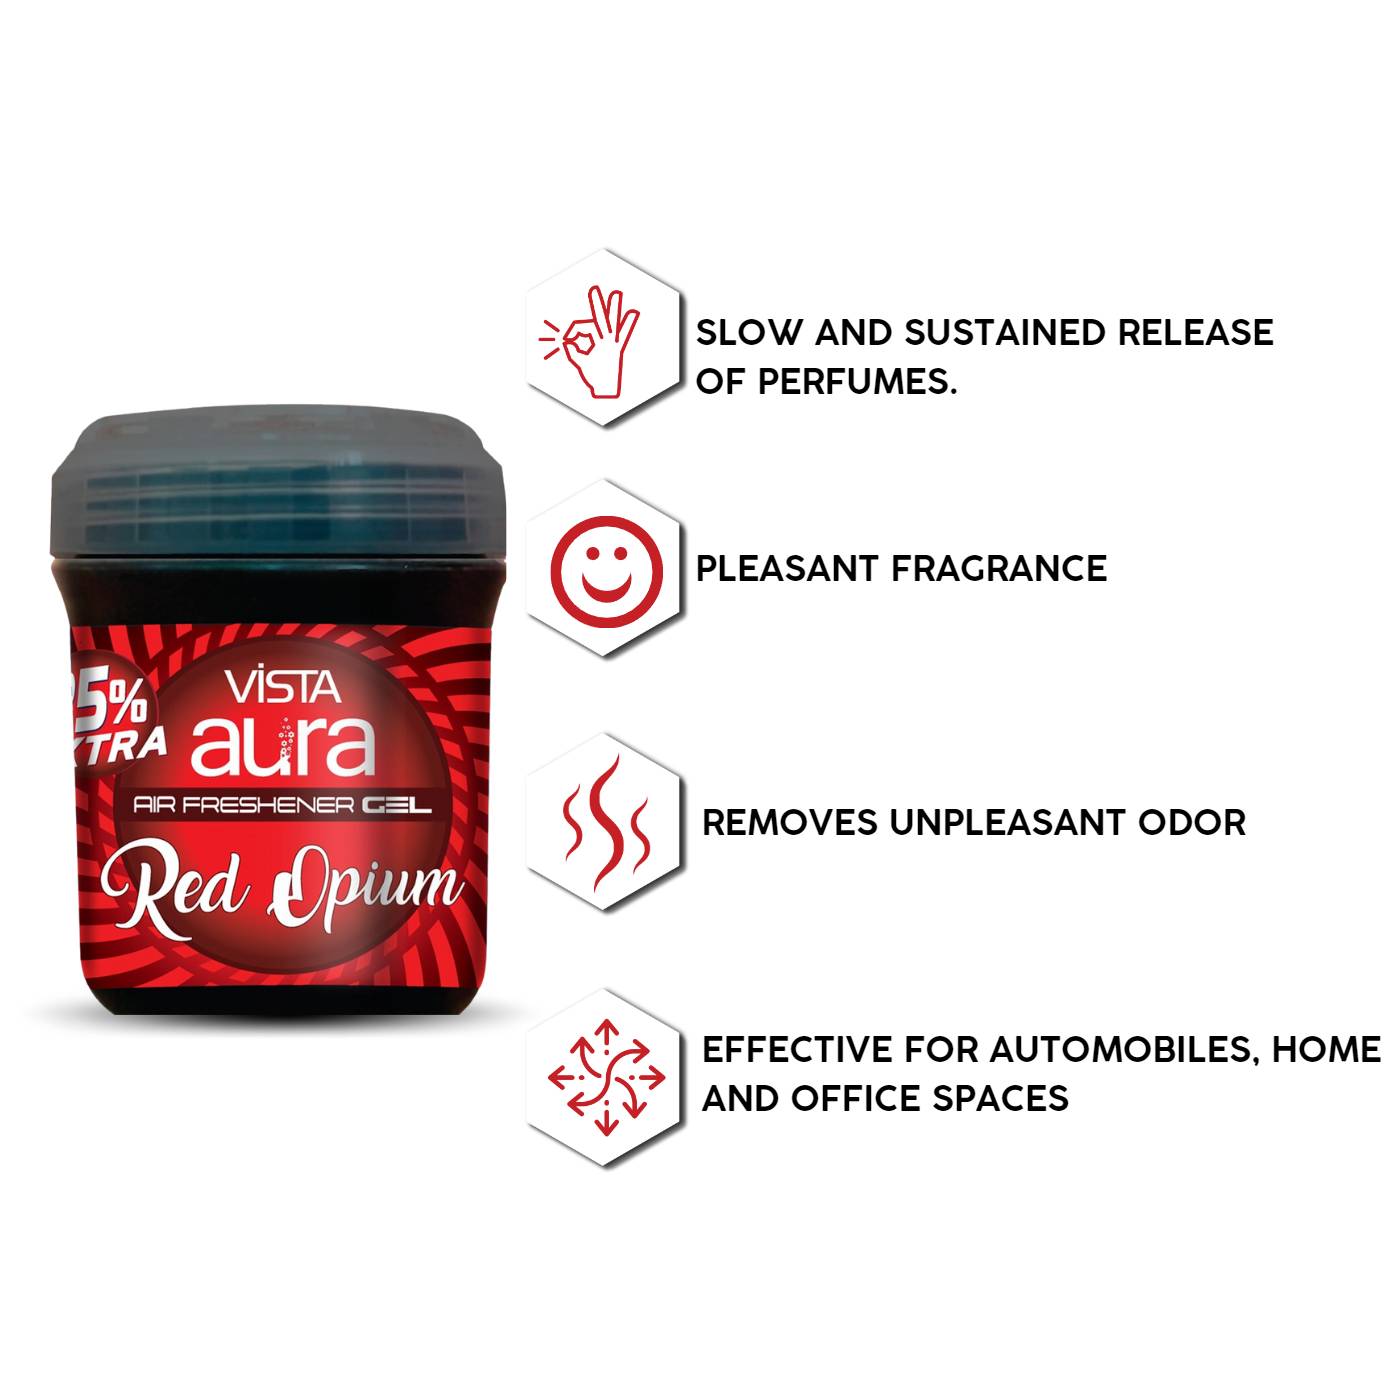 Vista Aura Air Freshener Gel Red Opium 100 g